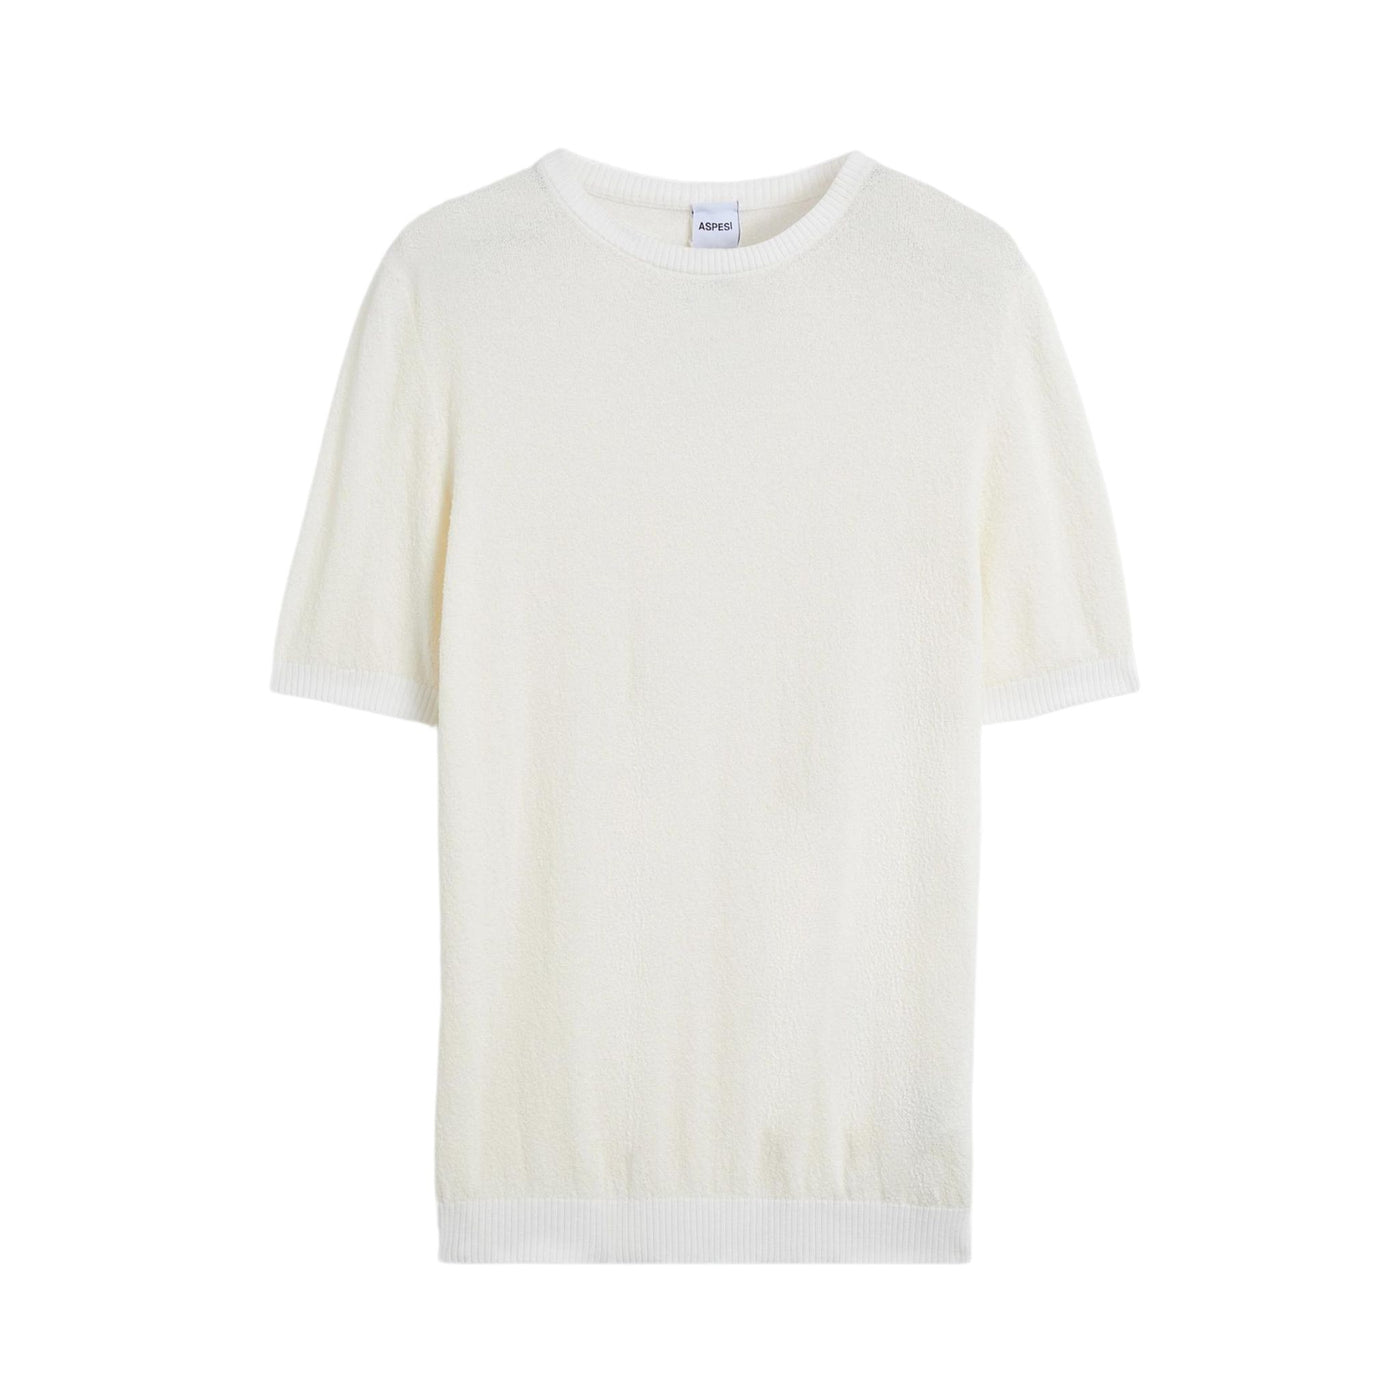 T-shirt Uomo in maglia di cotone con bordi a costine